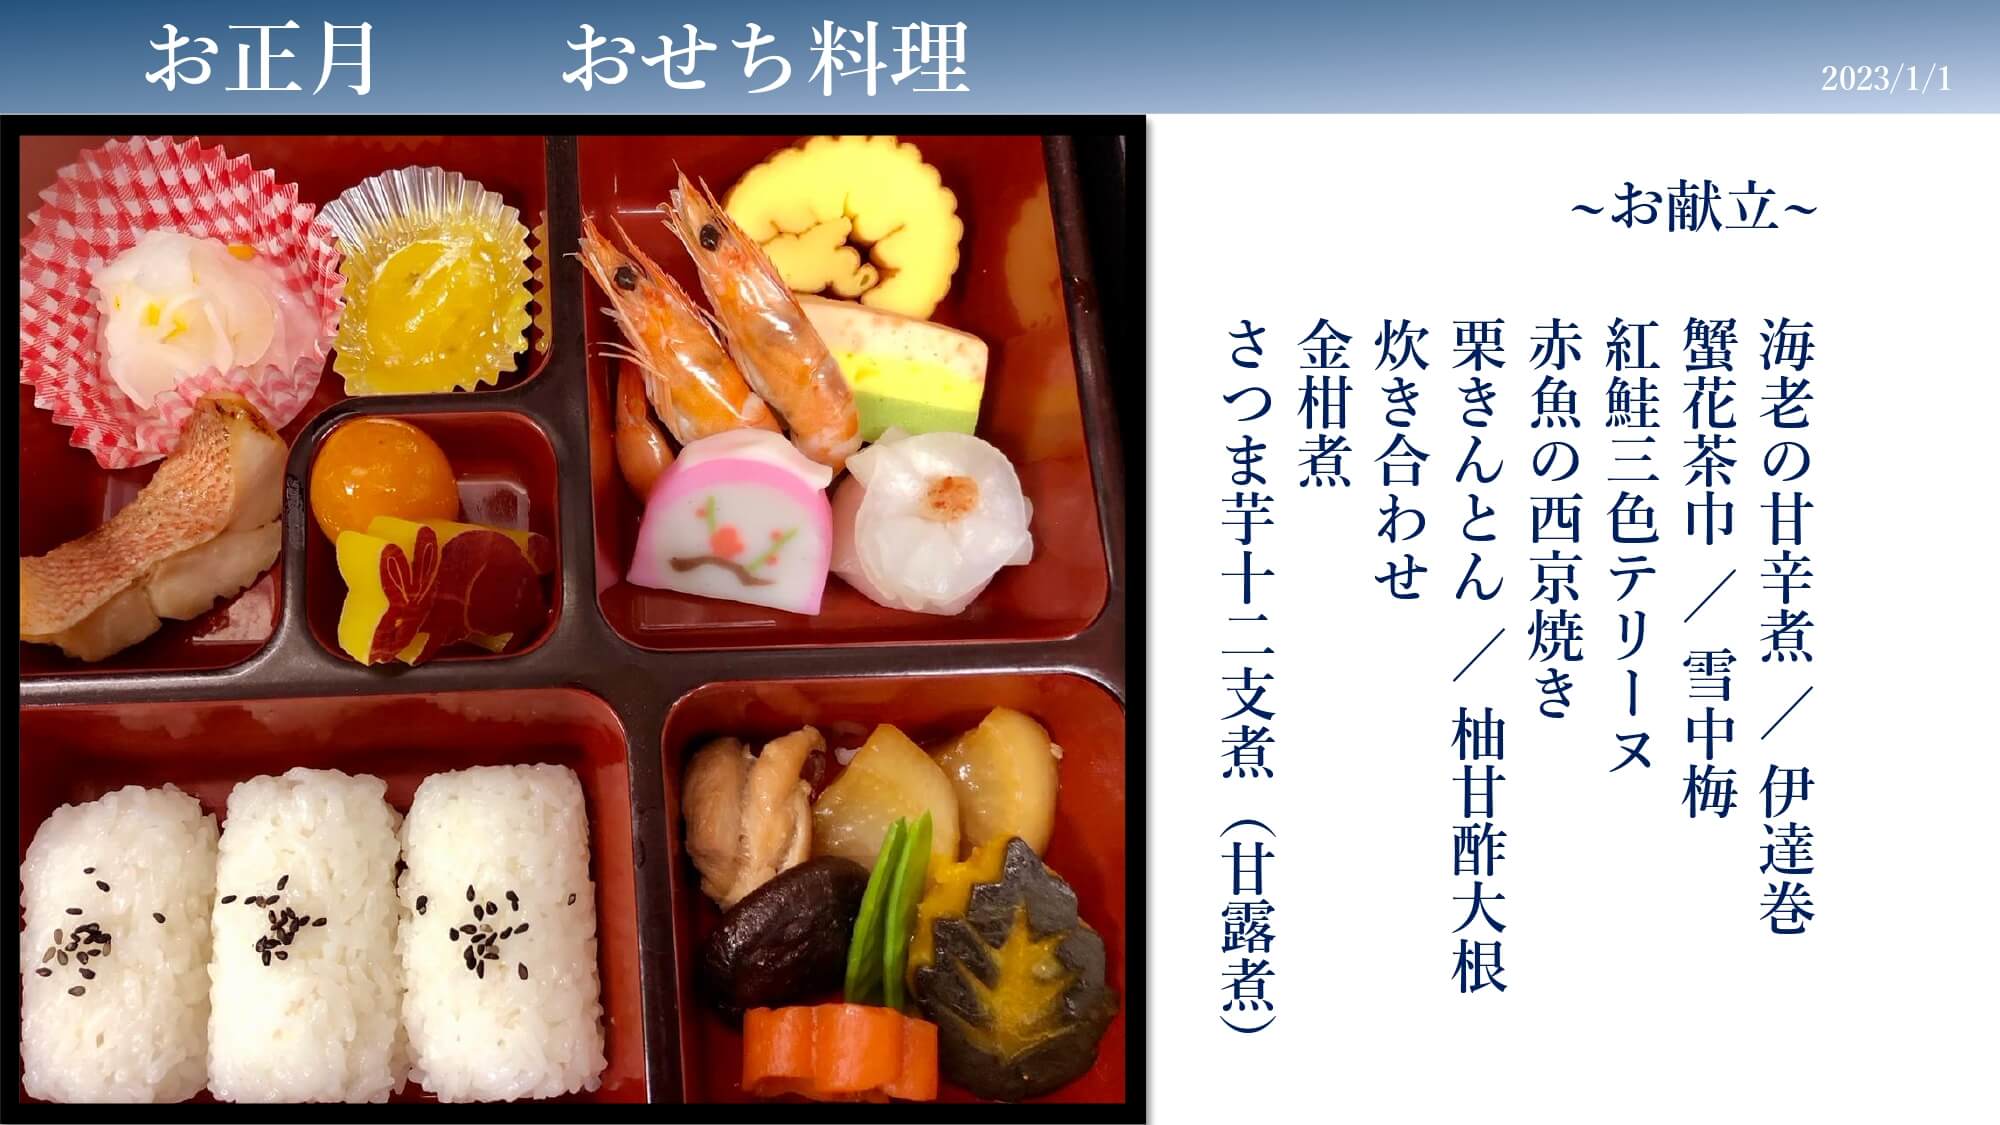 宮崎市の南部病院の行事食(1月)「お正月 おせち料理」